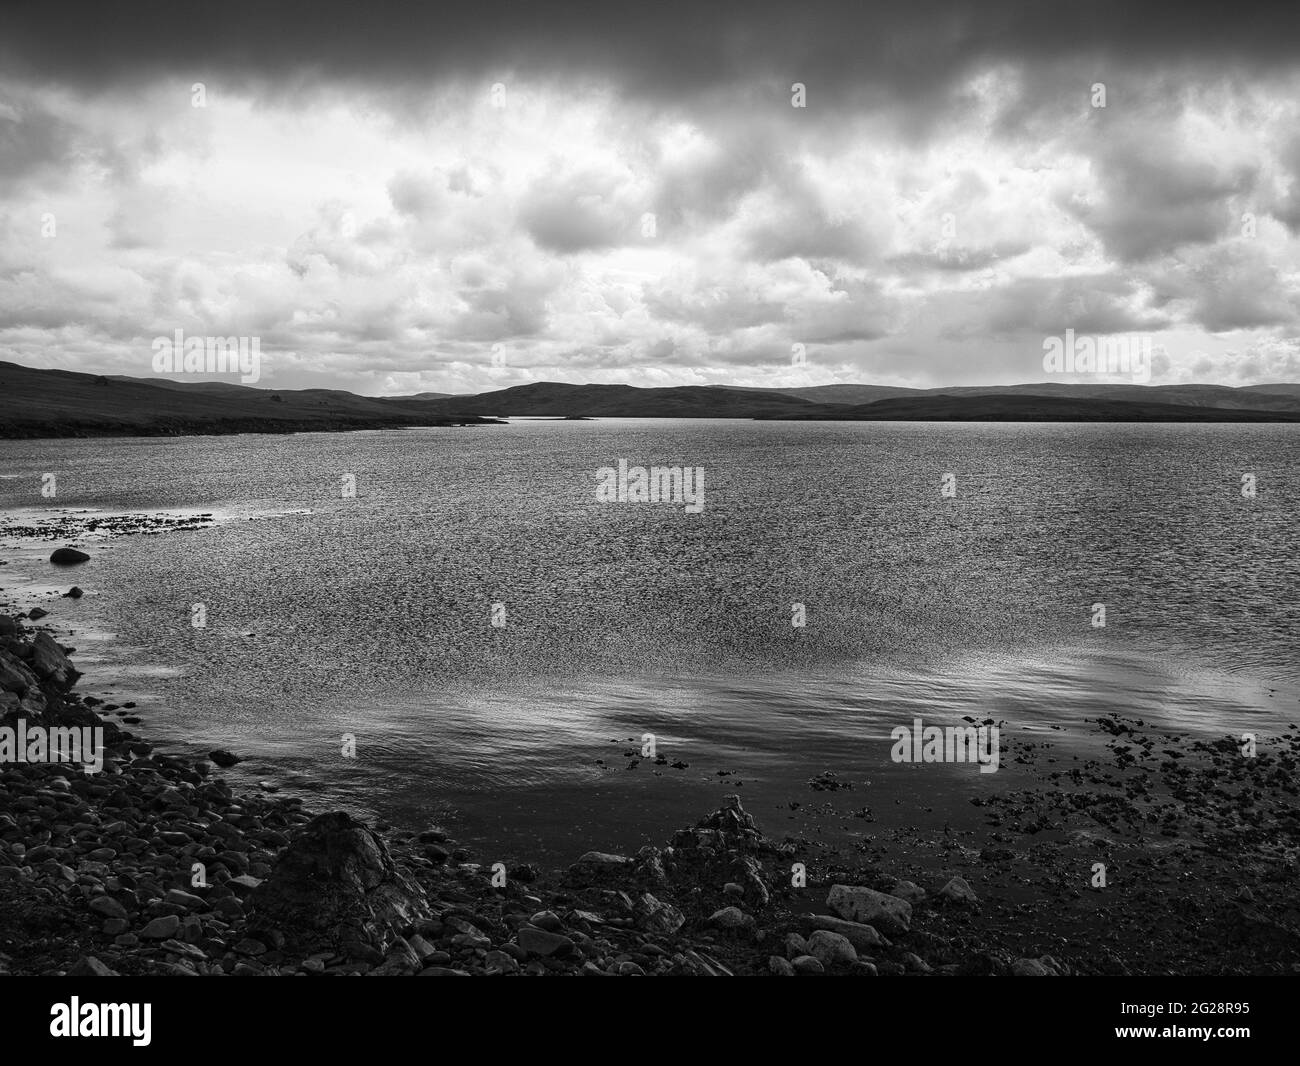 Une vue granuleuse, noire et blanche sur le rivage, la mer et les nuages d'Outrabister sur Lunna Ness, Shetland, Royaume-Uni Banque D'Images